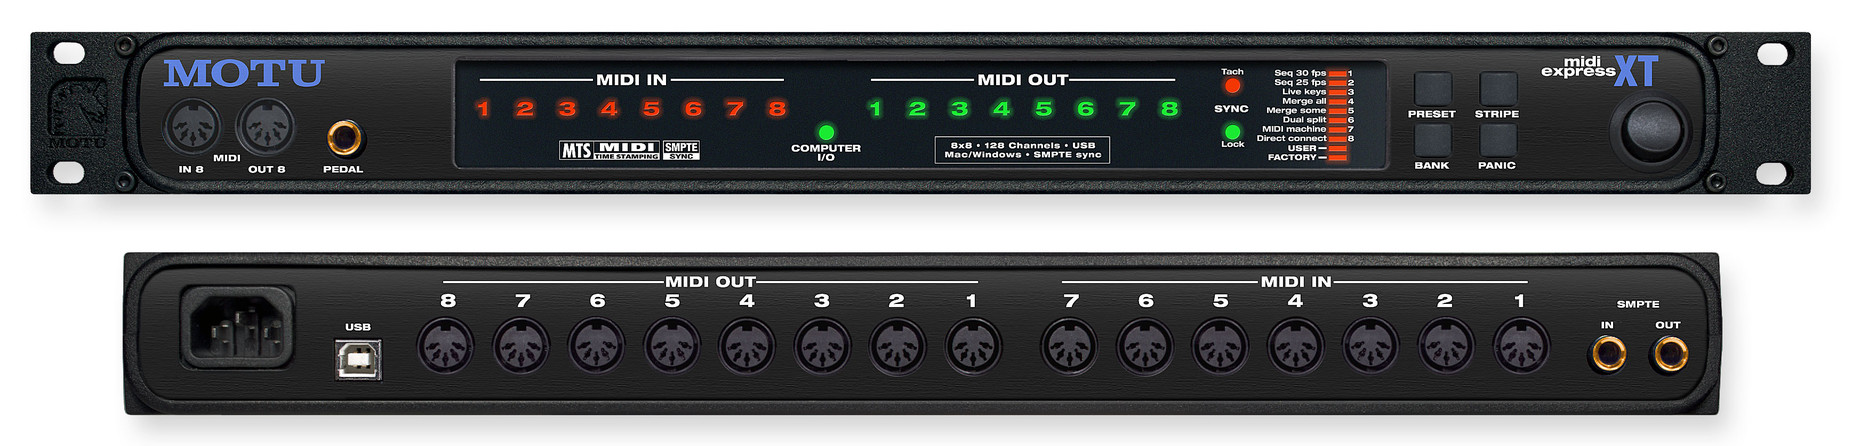 MOTU MIDI Express XT 128-channel USB MIDI interface